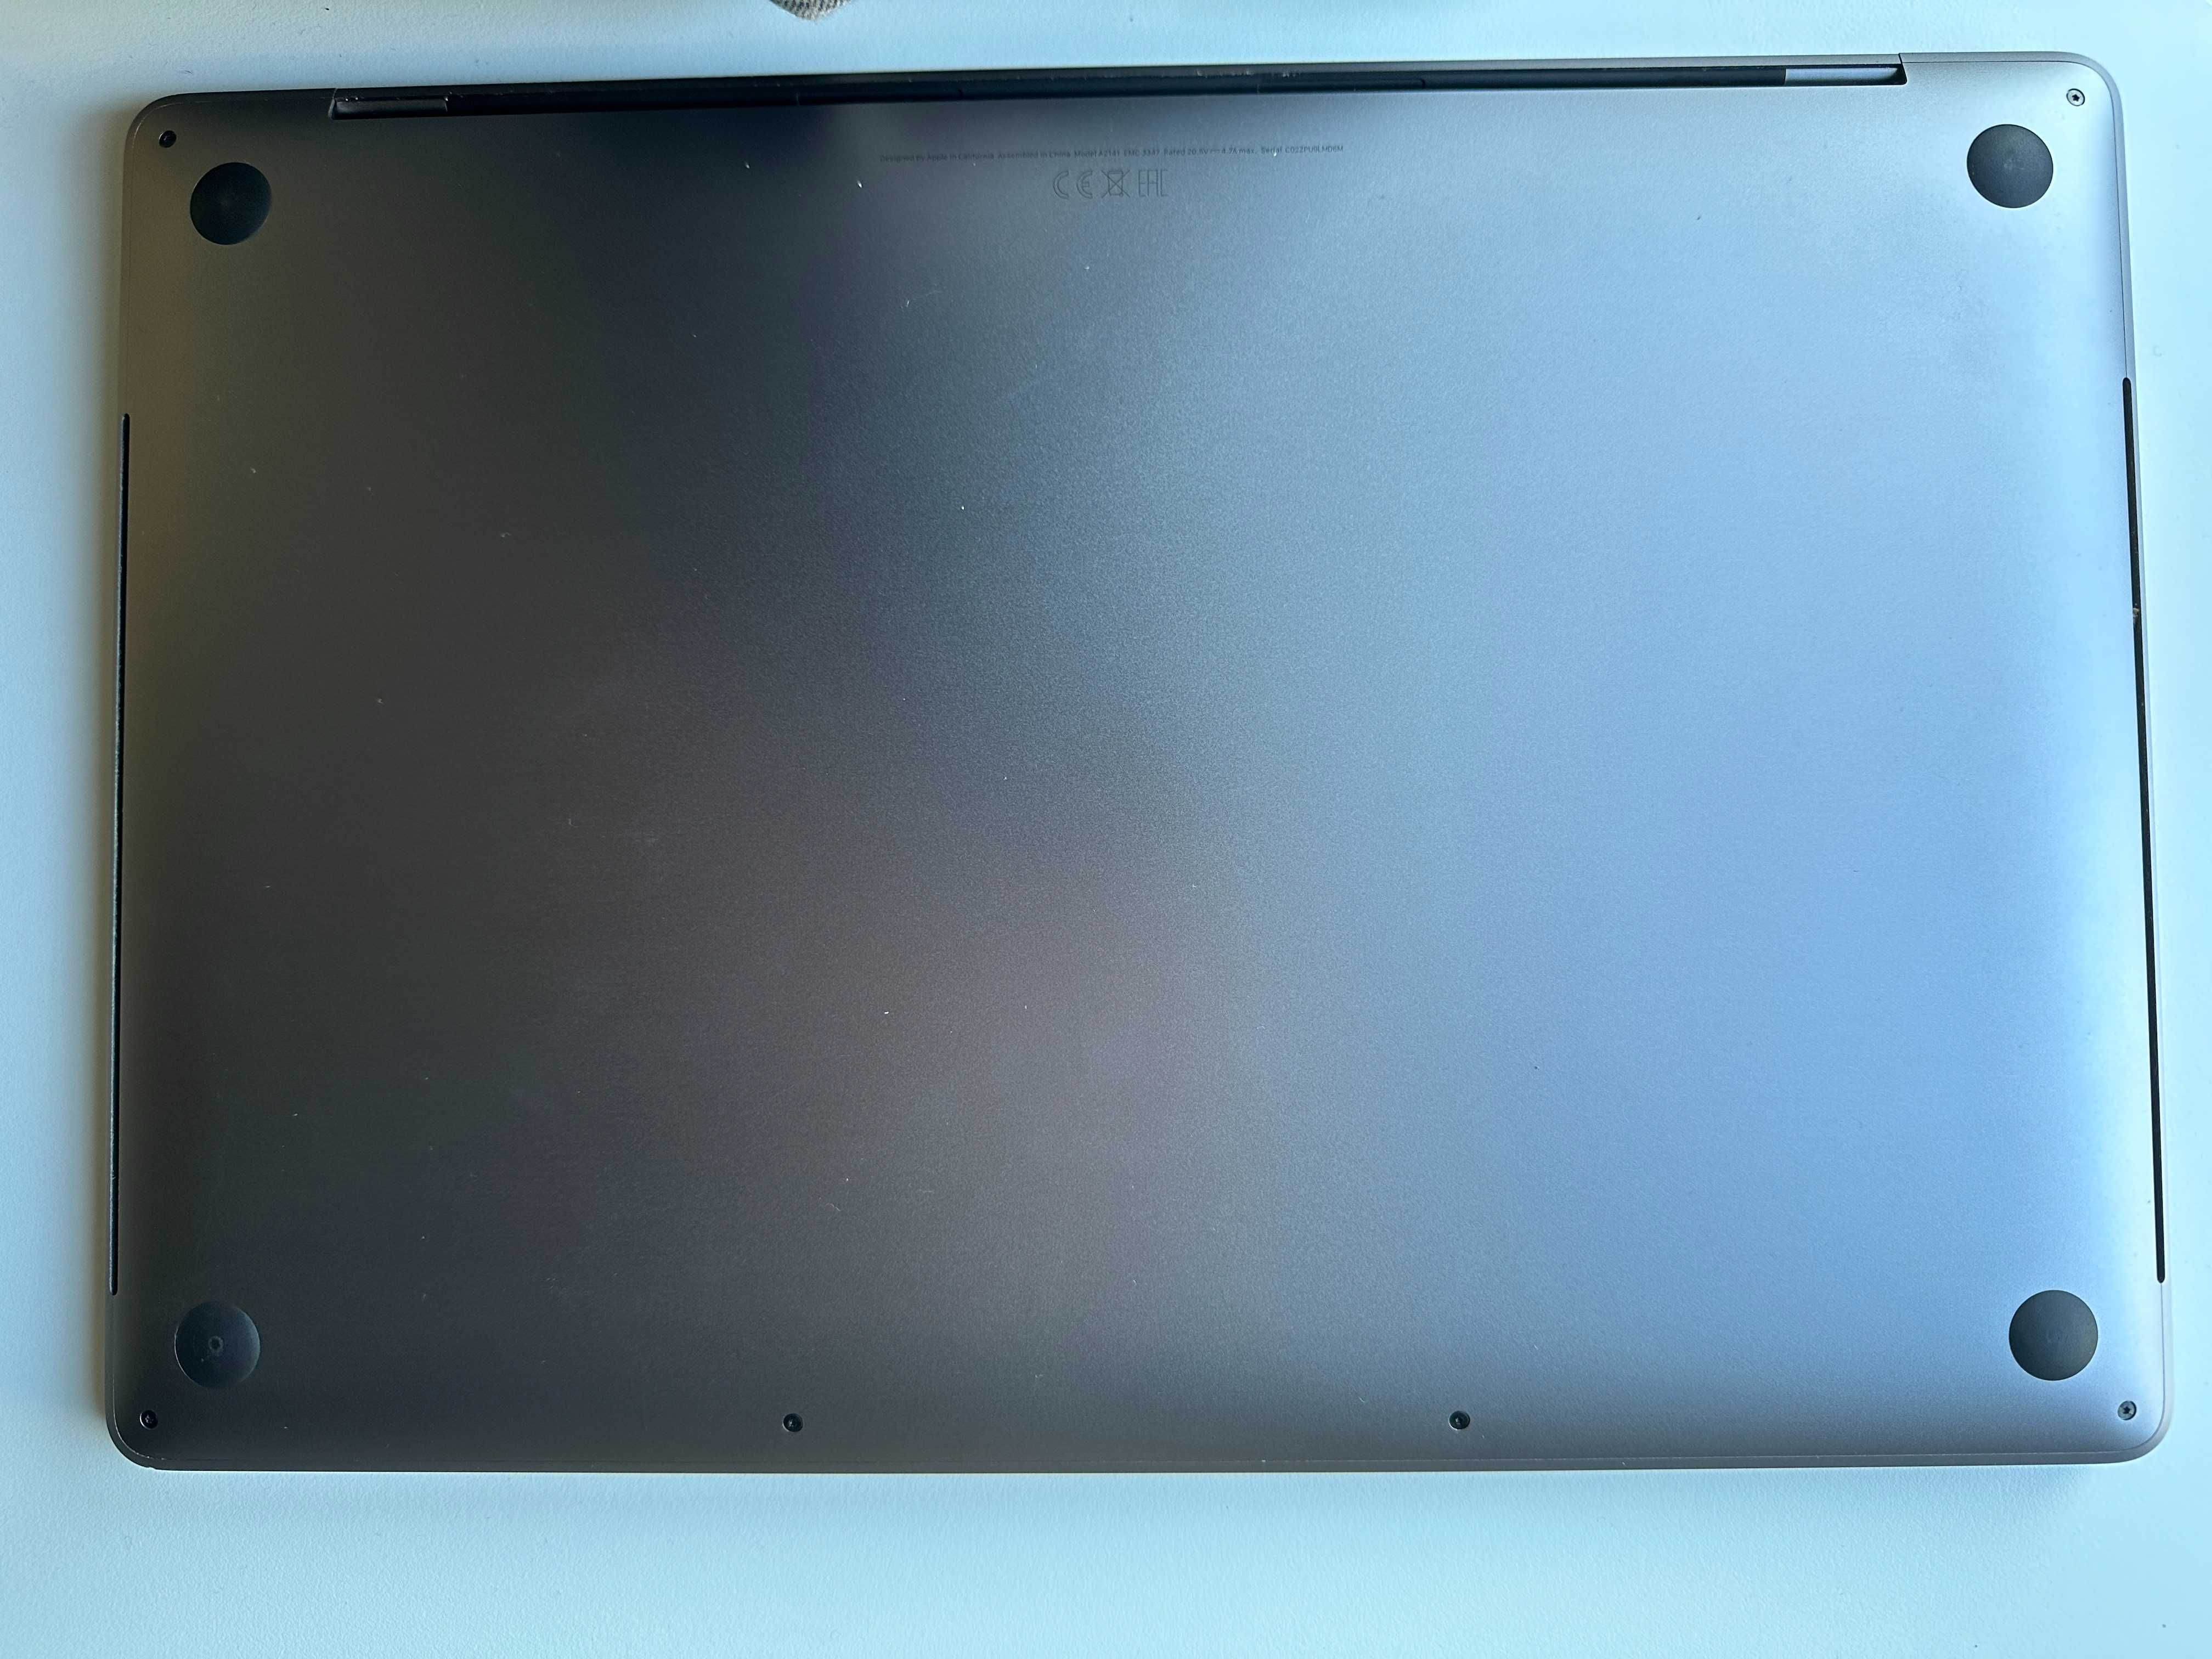 Macbook Pro 16 inch 2019